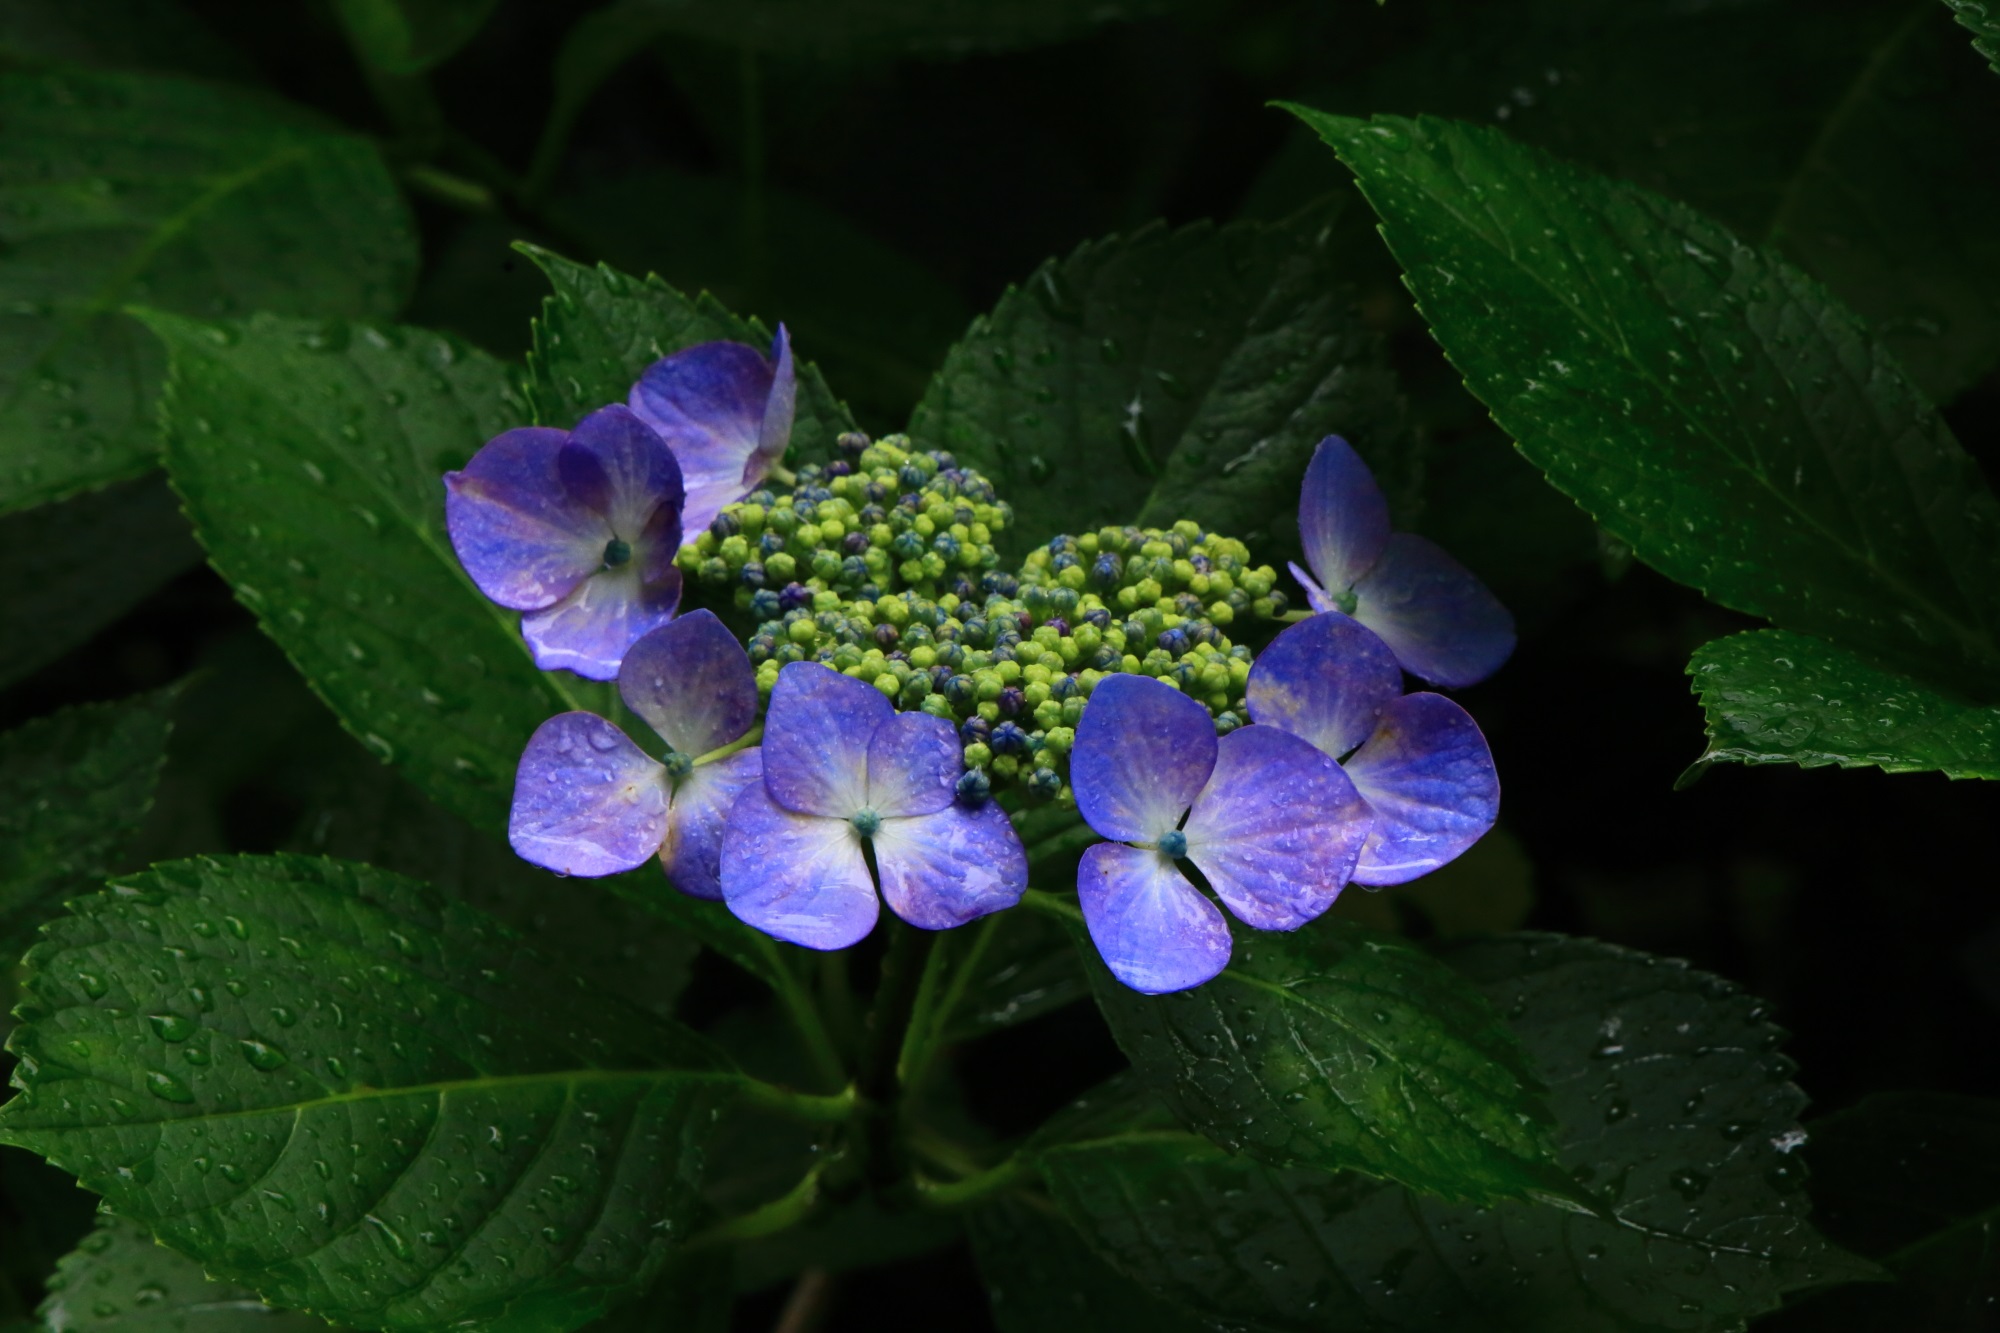 善峯寺の雨が演出する鮮やかな額紫陽花